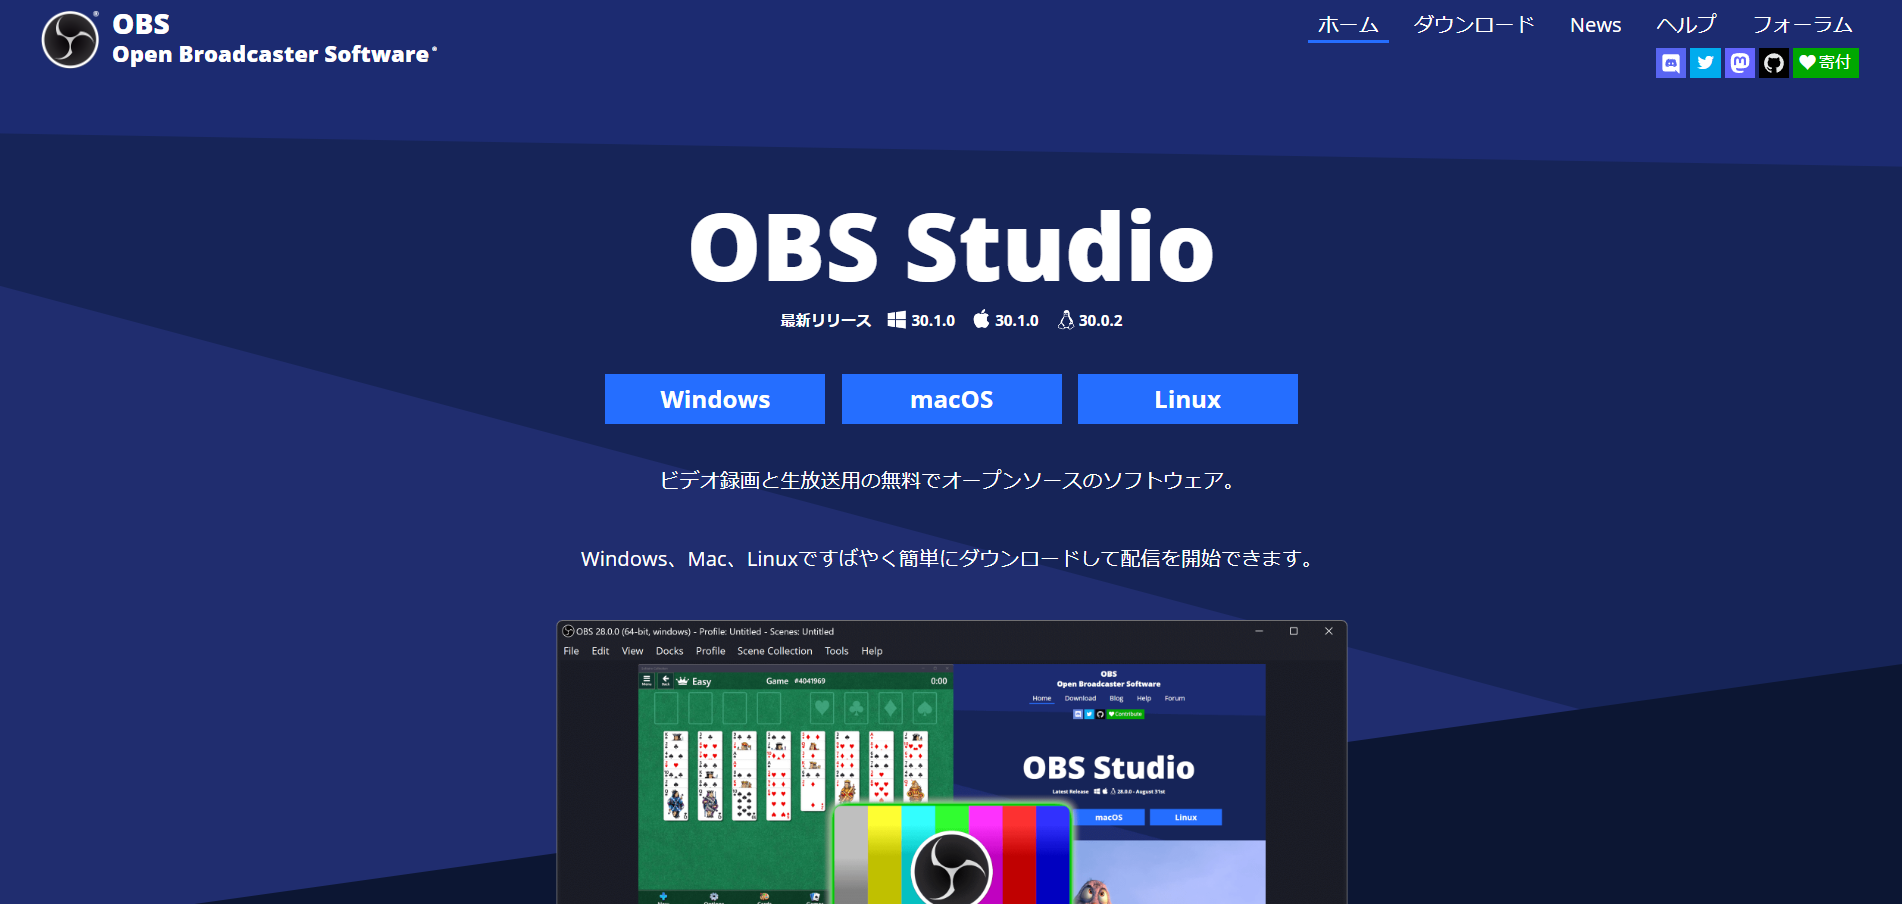 OBS Studio 定番の録画ツール